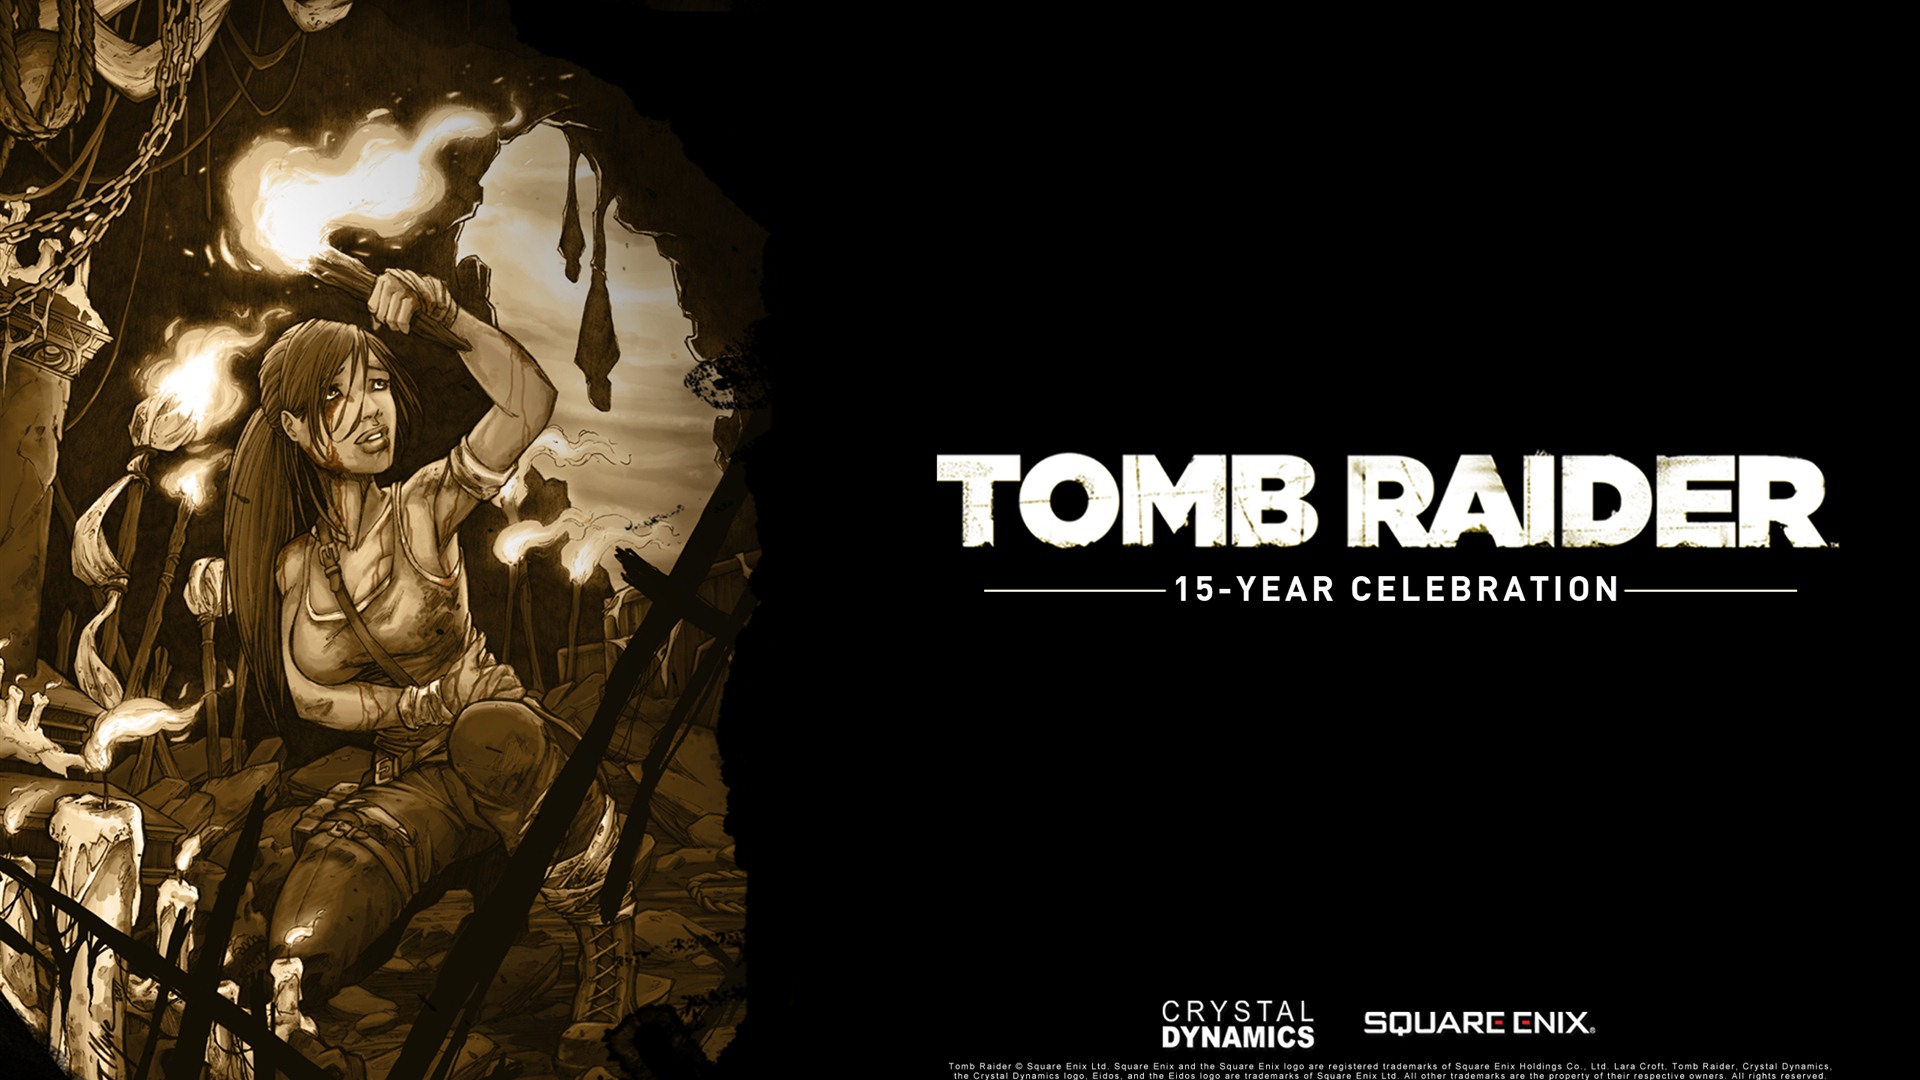 Tomb Raider 15-Year Celebration 古墓丽影15周年纪念版 高清壁纸6 - 1920x1080